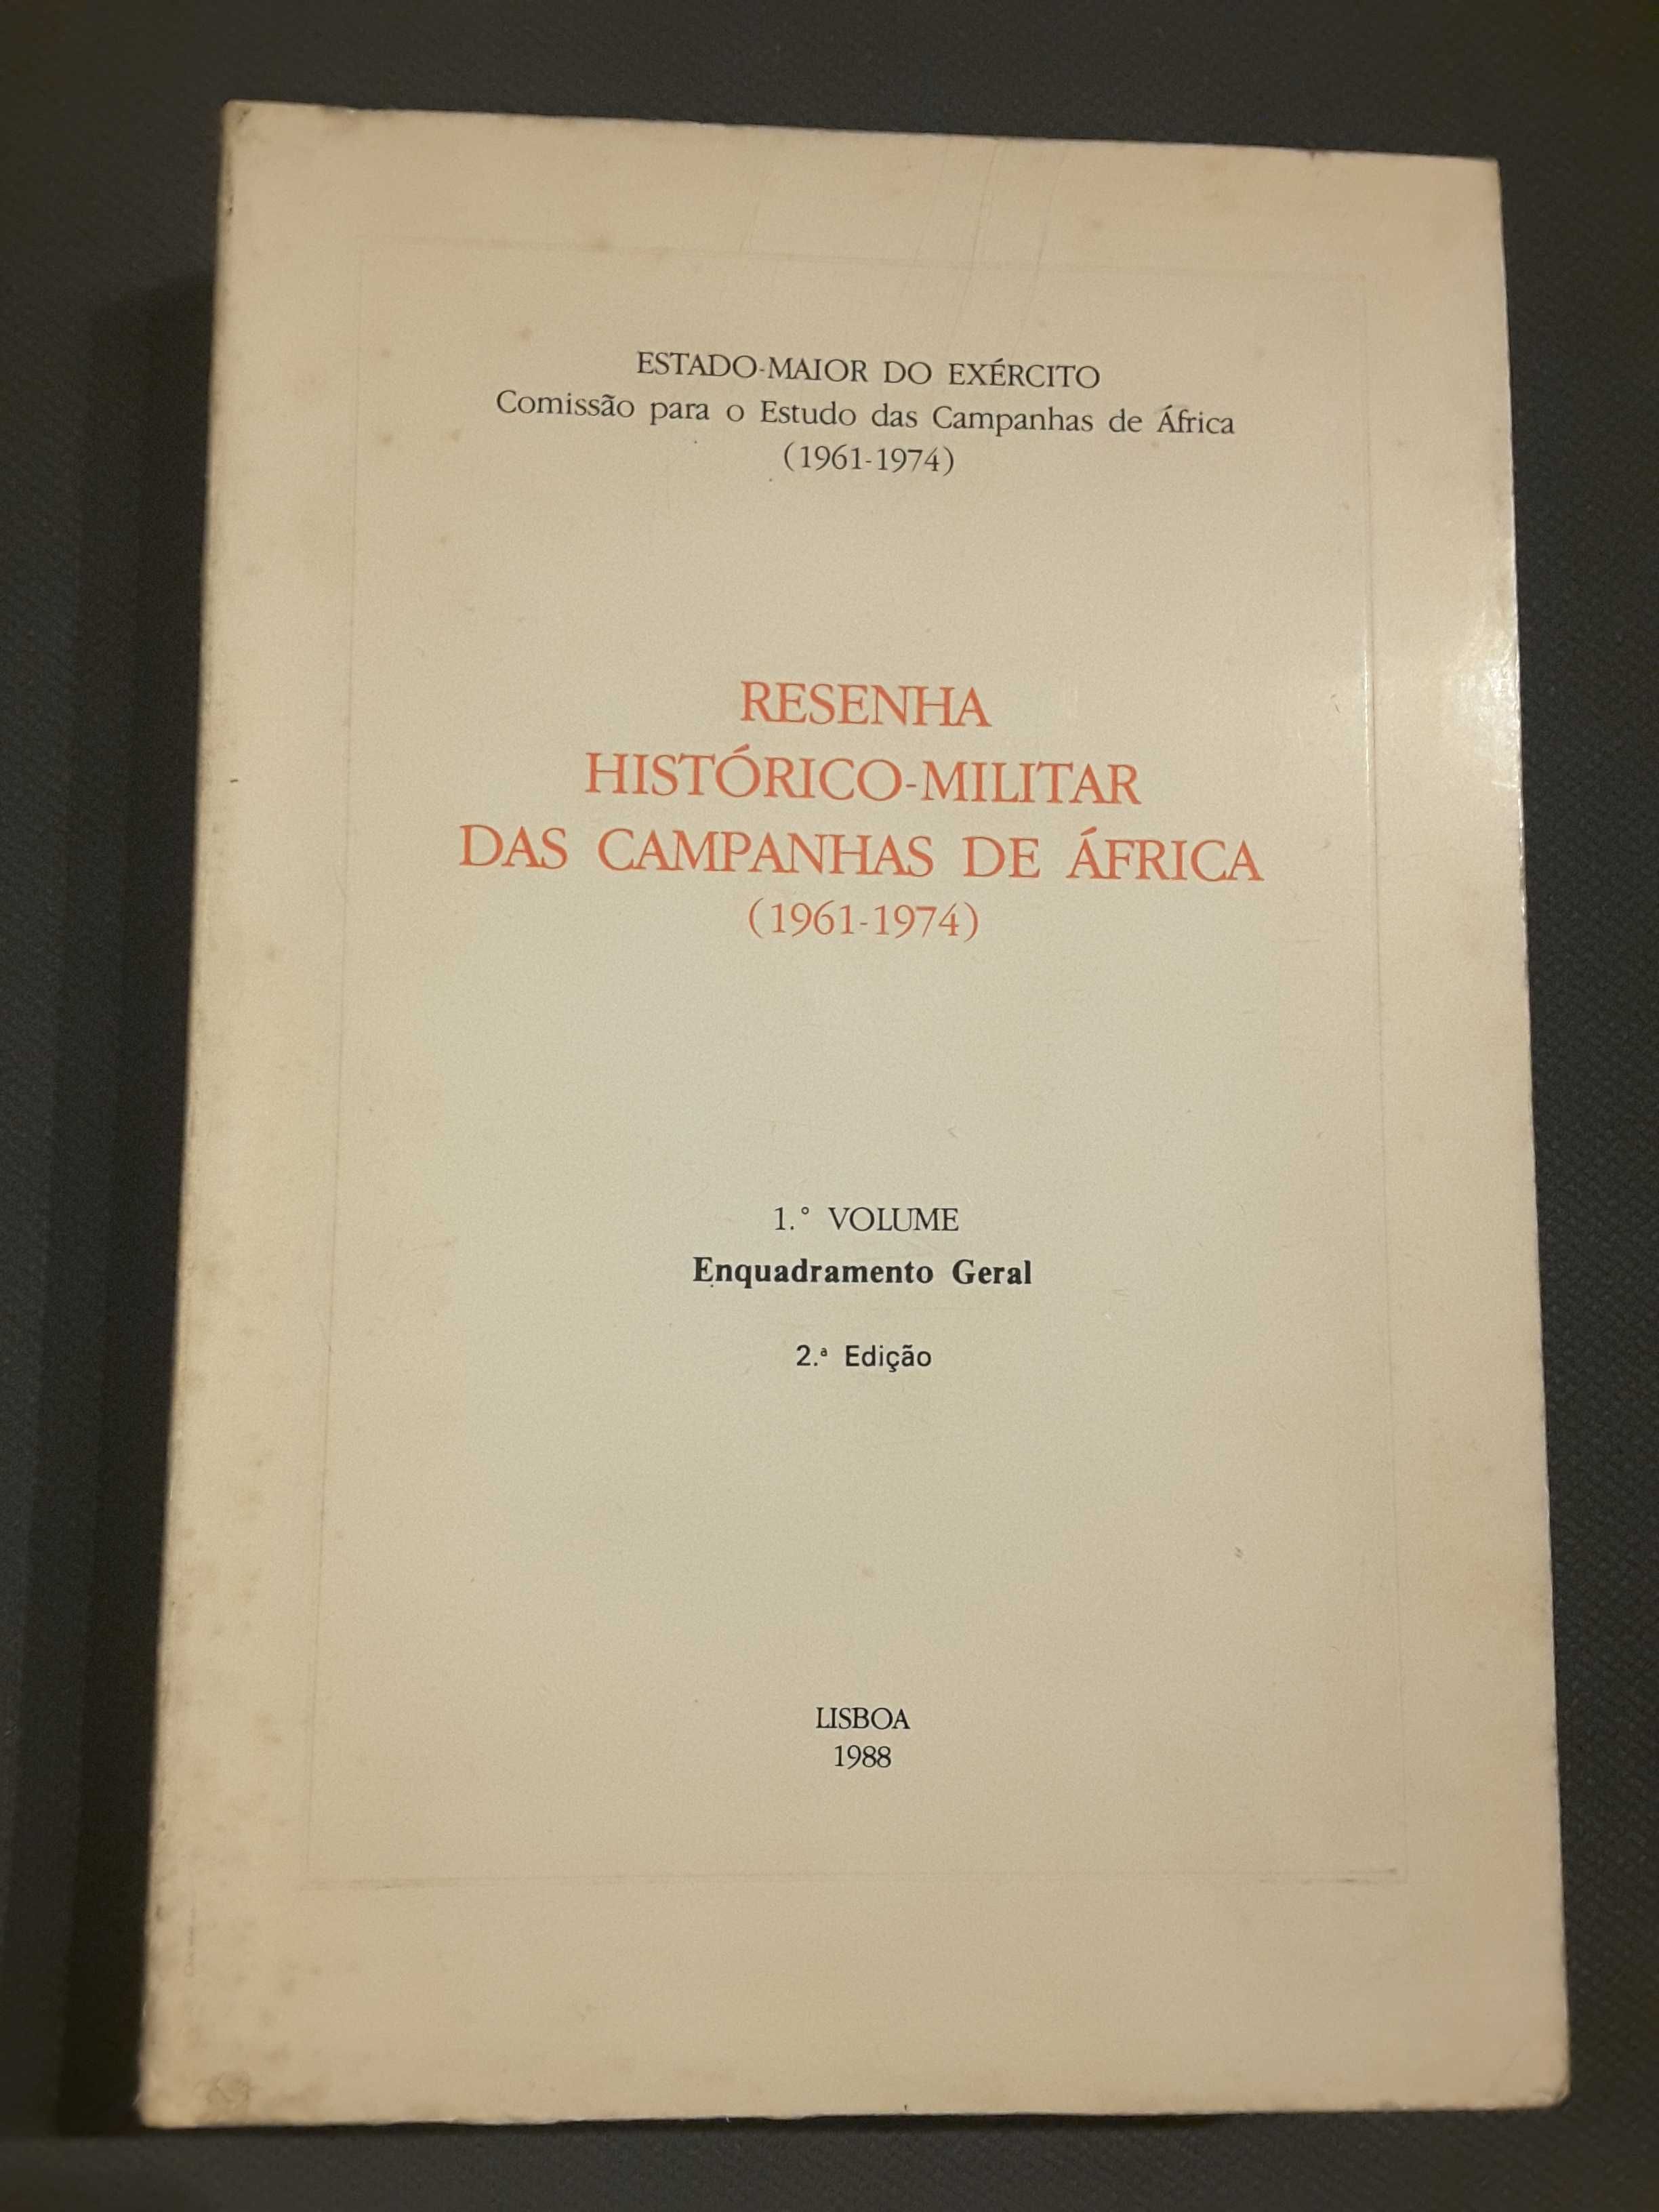 Resenha das Campanhas de África / Angola 1972